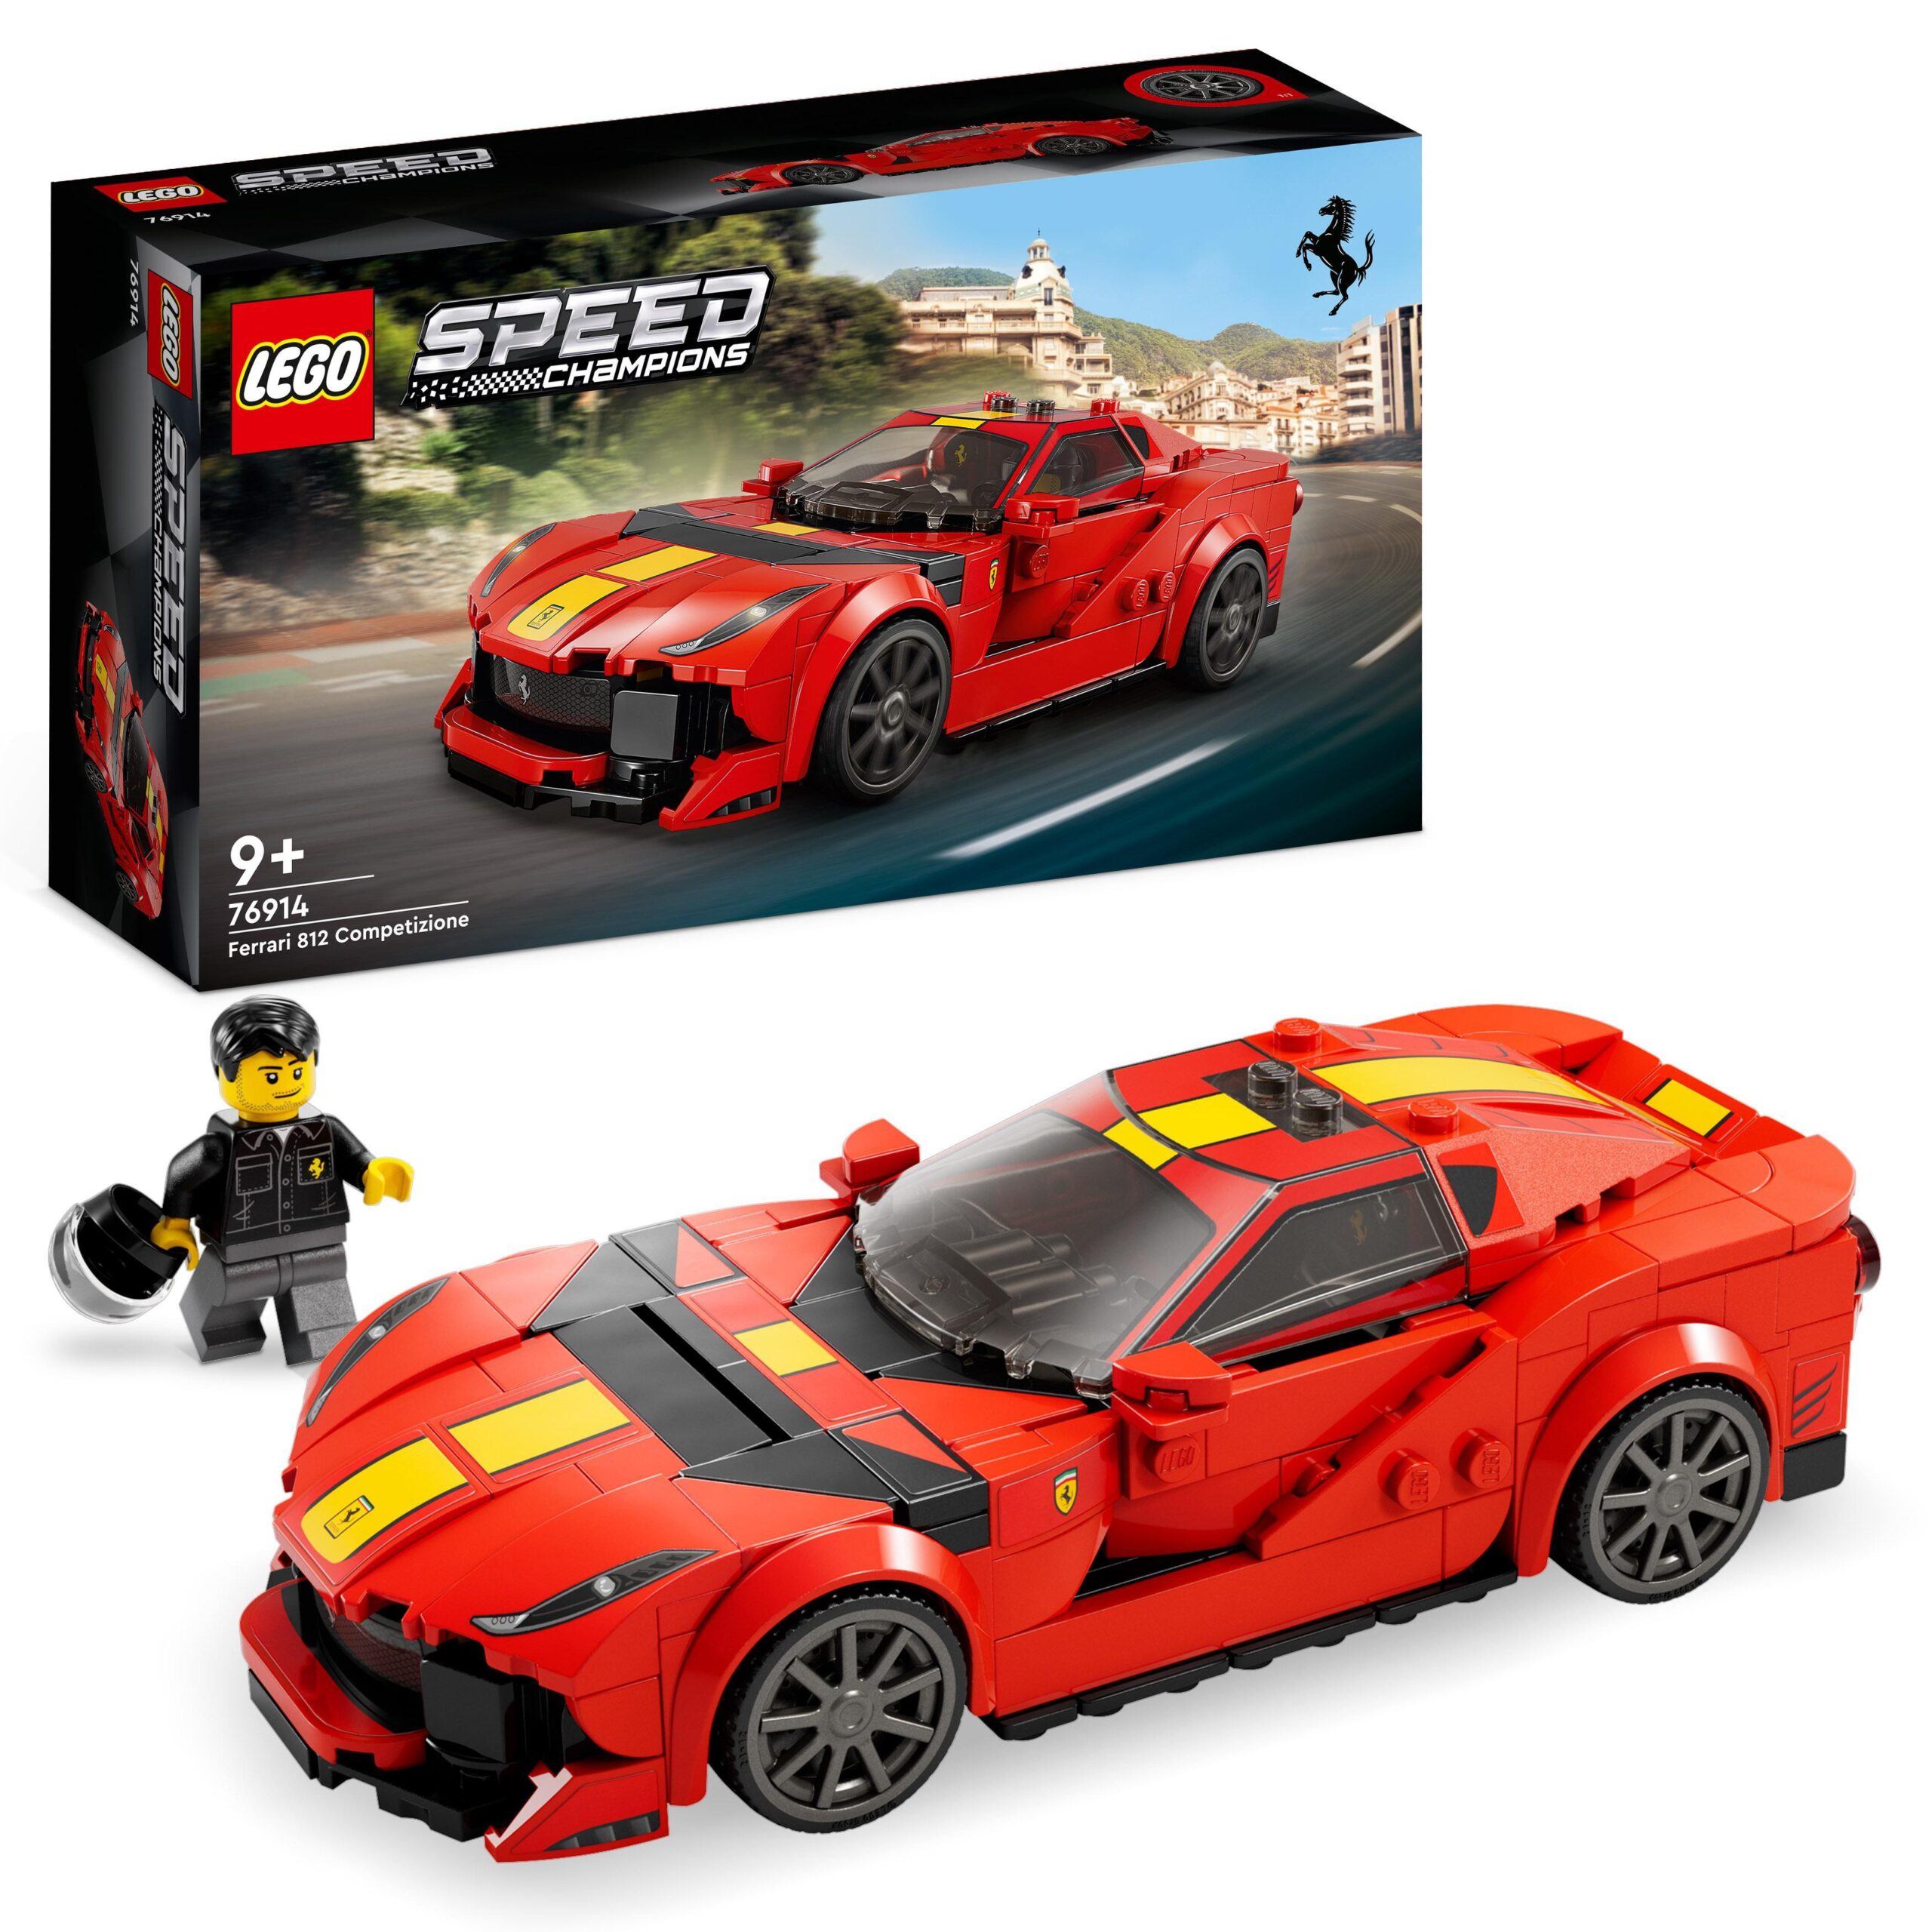 Lego speed champions 76914 ferrari 812 competizione, modellino di